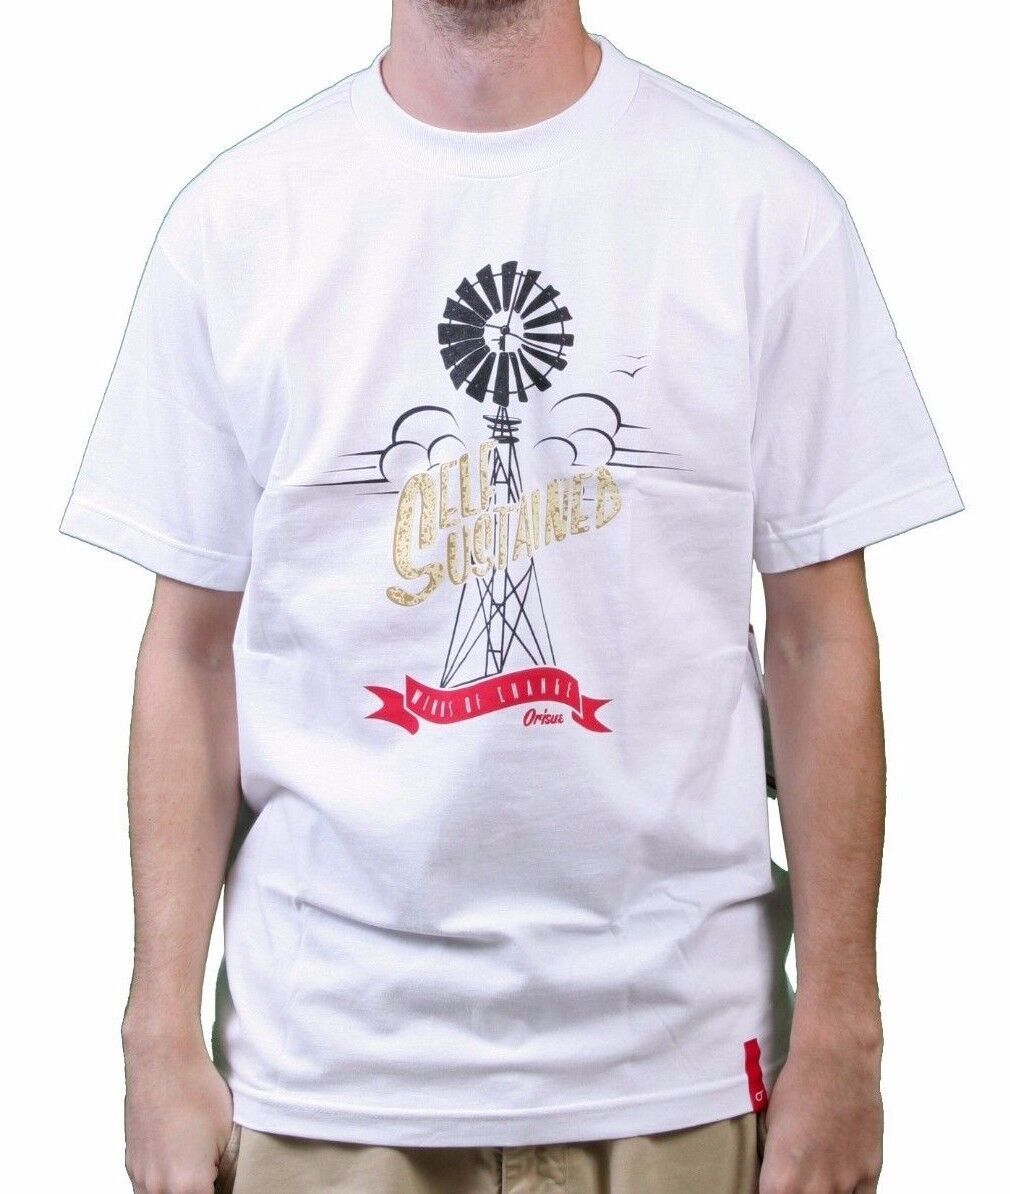 Primary image for Orisue Hombre Blanco Self Prolongada Winds De Cambio Windmill Camiseta Nwt